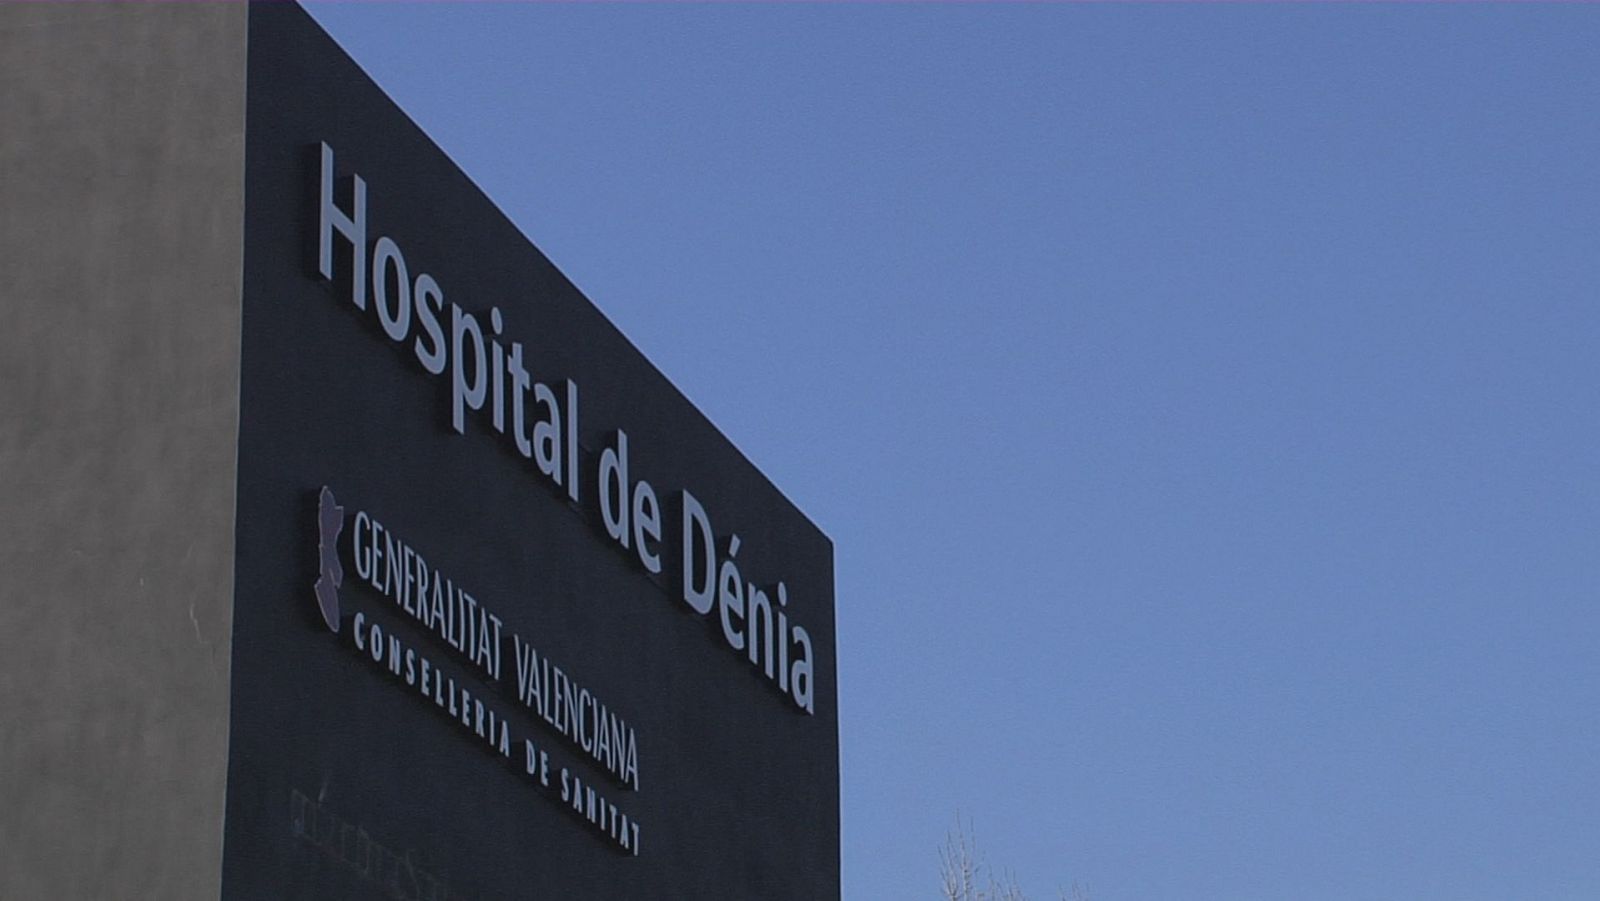 L'Hospital de Dénia i la seua àrea de salut s'incorporen al sistema públic